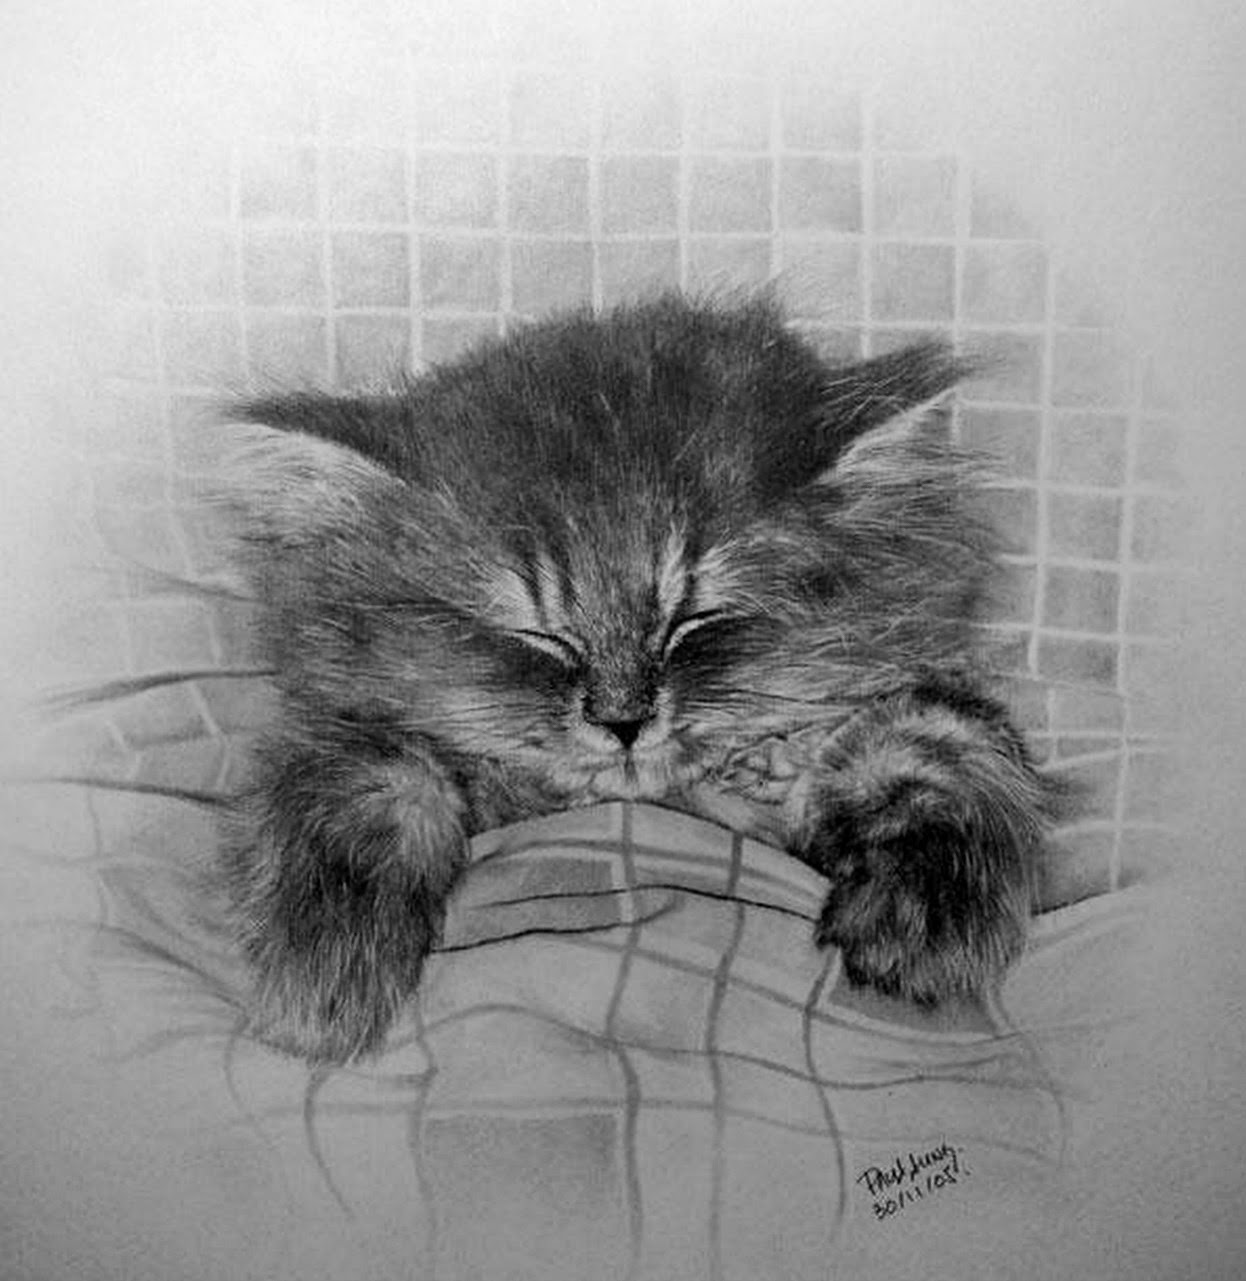 EL ARTE Y ACTIVIDAD CULTURAL: Dibujos de Gatos a Lápiz, Paul Lung, 1970,  China.